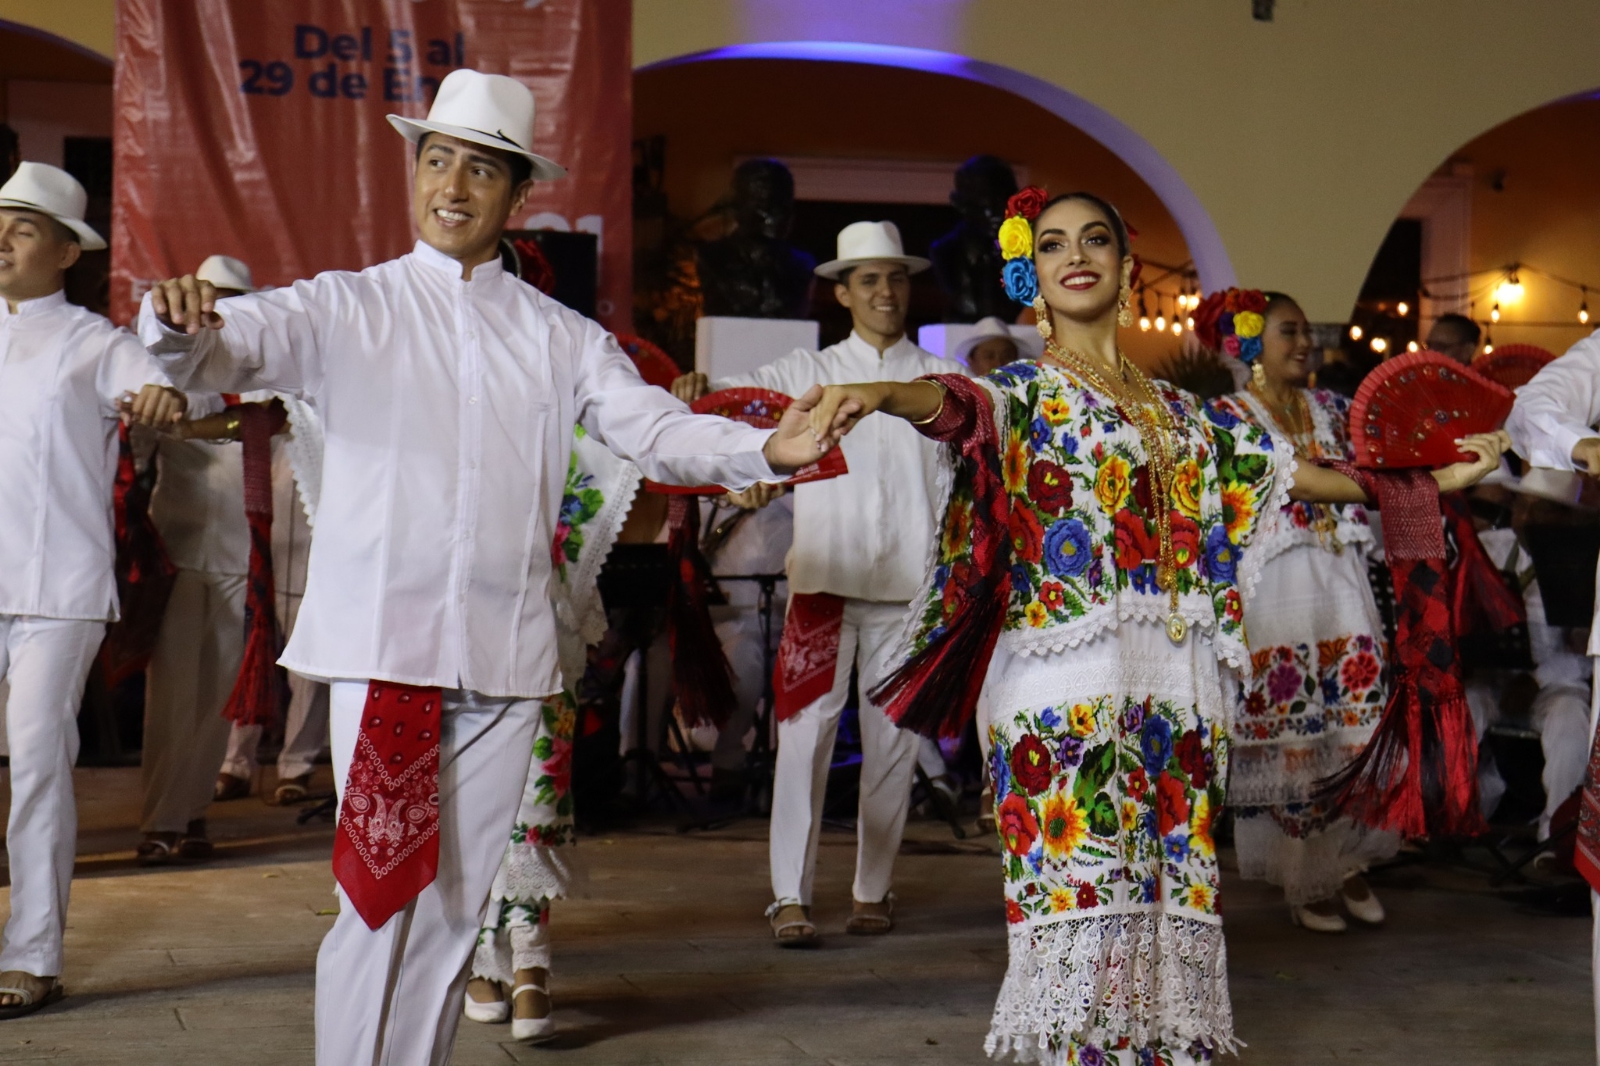 Aprueban designación de la Vaquería como Patrimonio Cultural Intangible de Yucatán